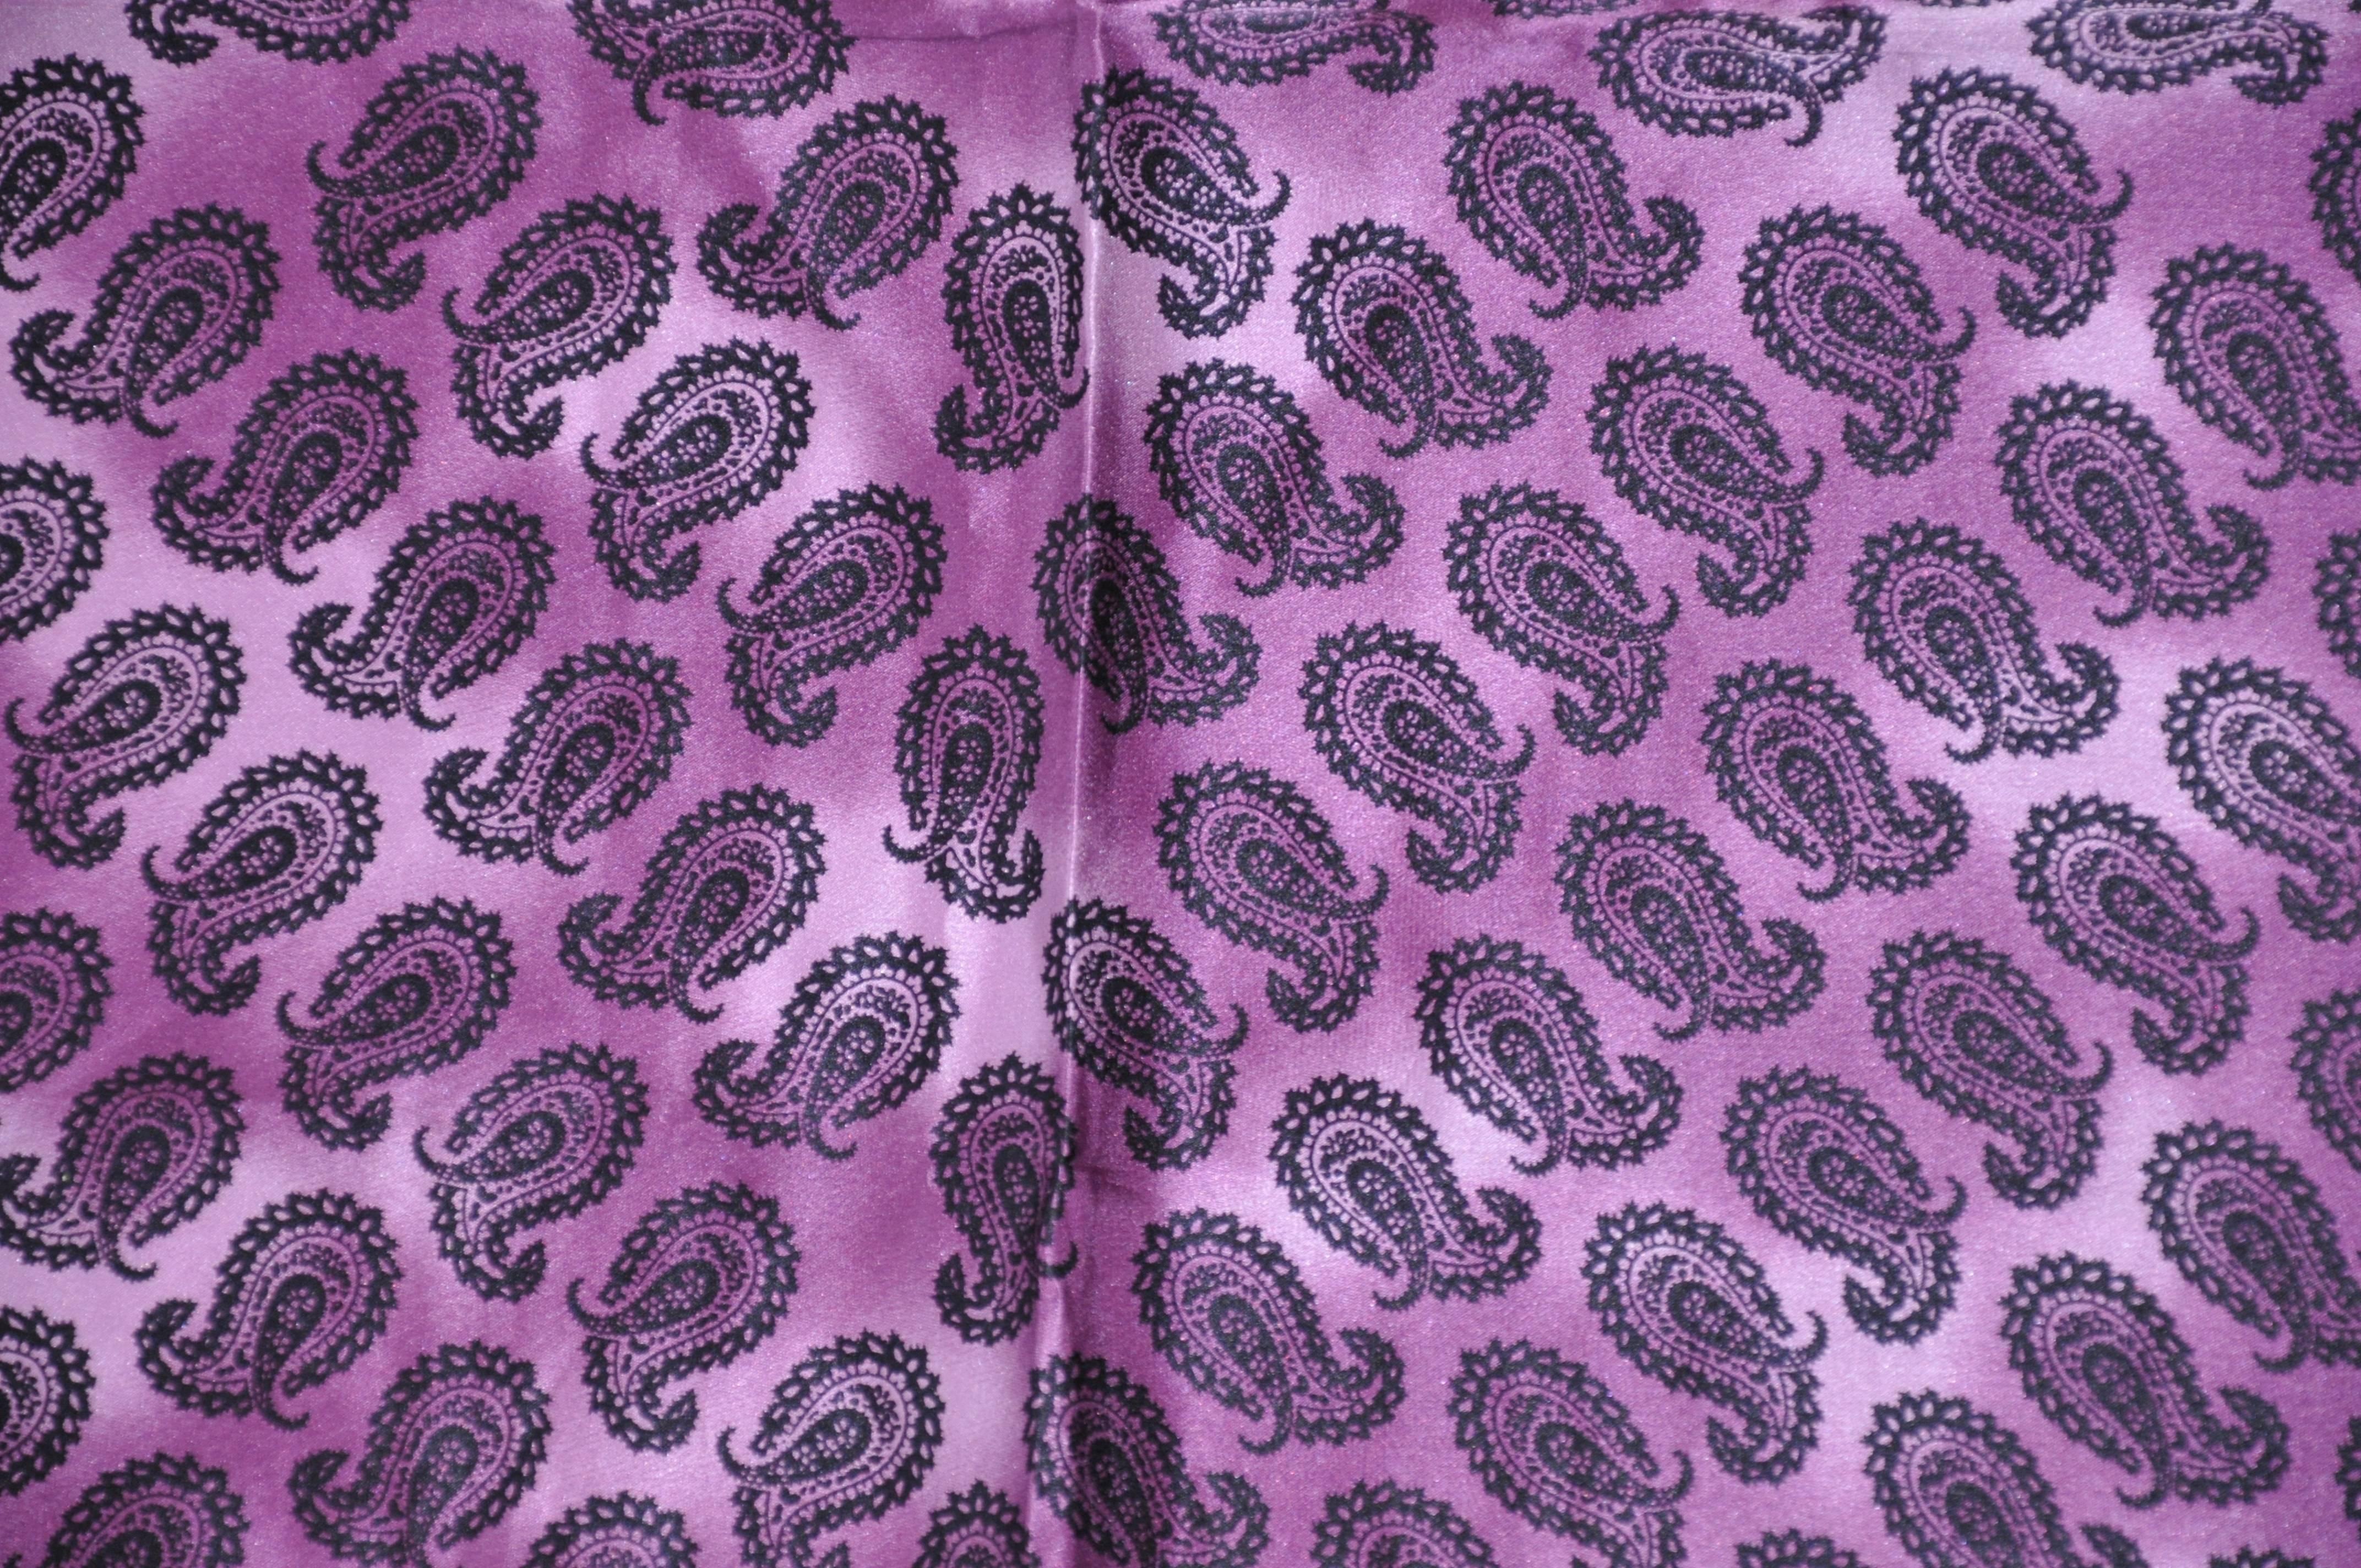        Perry Ellis seltene Multi-Palseys Mitte in schwarz und Schattierungen von Lavendel und Violett ist mit Lavendel mit detaillierten Stickereien umgeben, mit handgerollten Kanten beendet. Dieser wunderbare Schal misst 20 Zoll mal 21 Zoll.